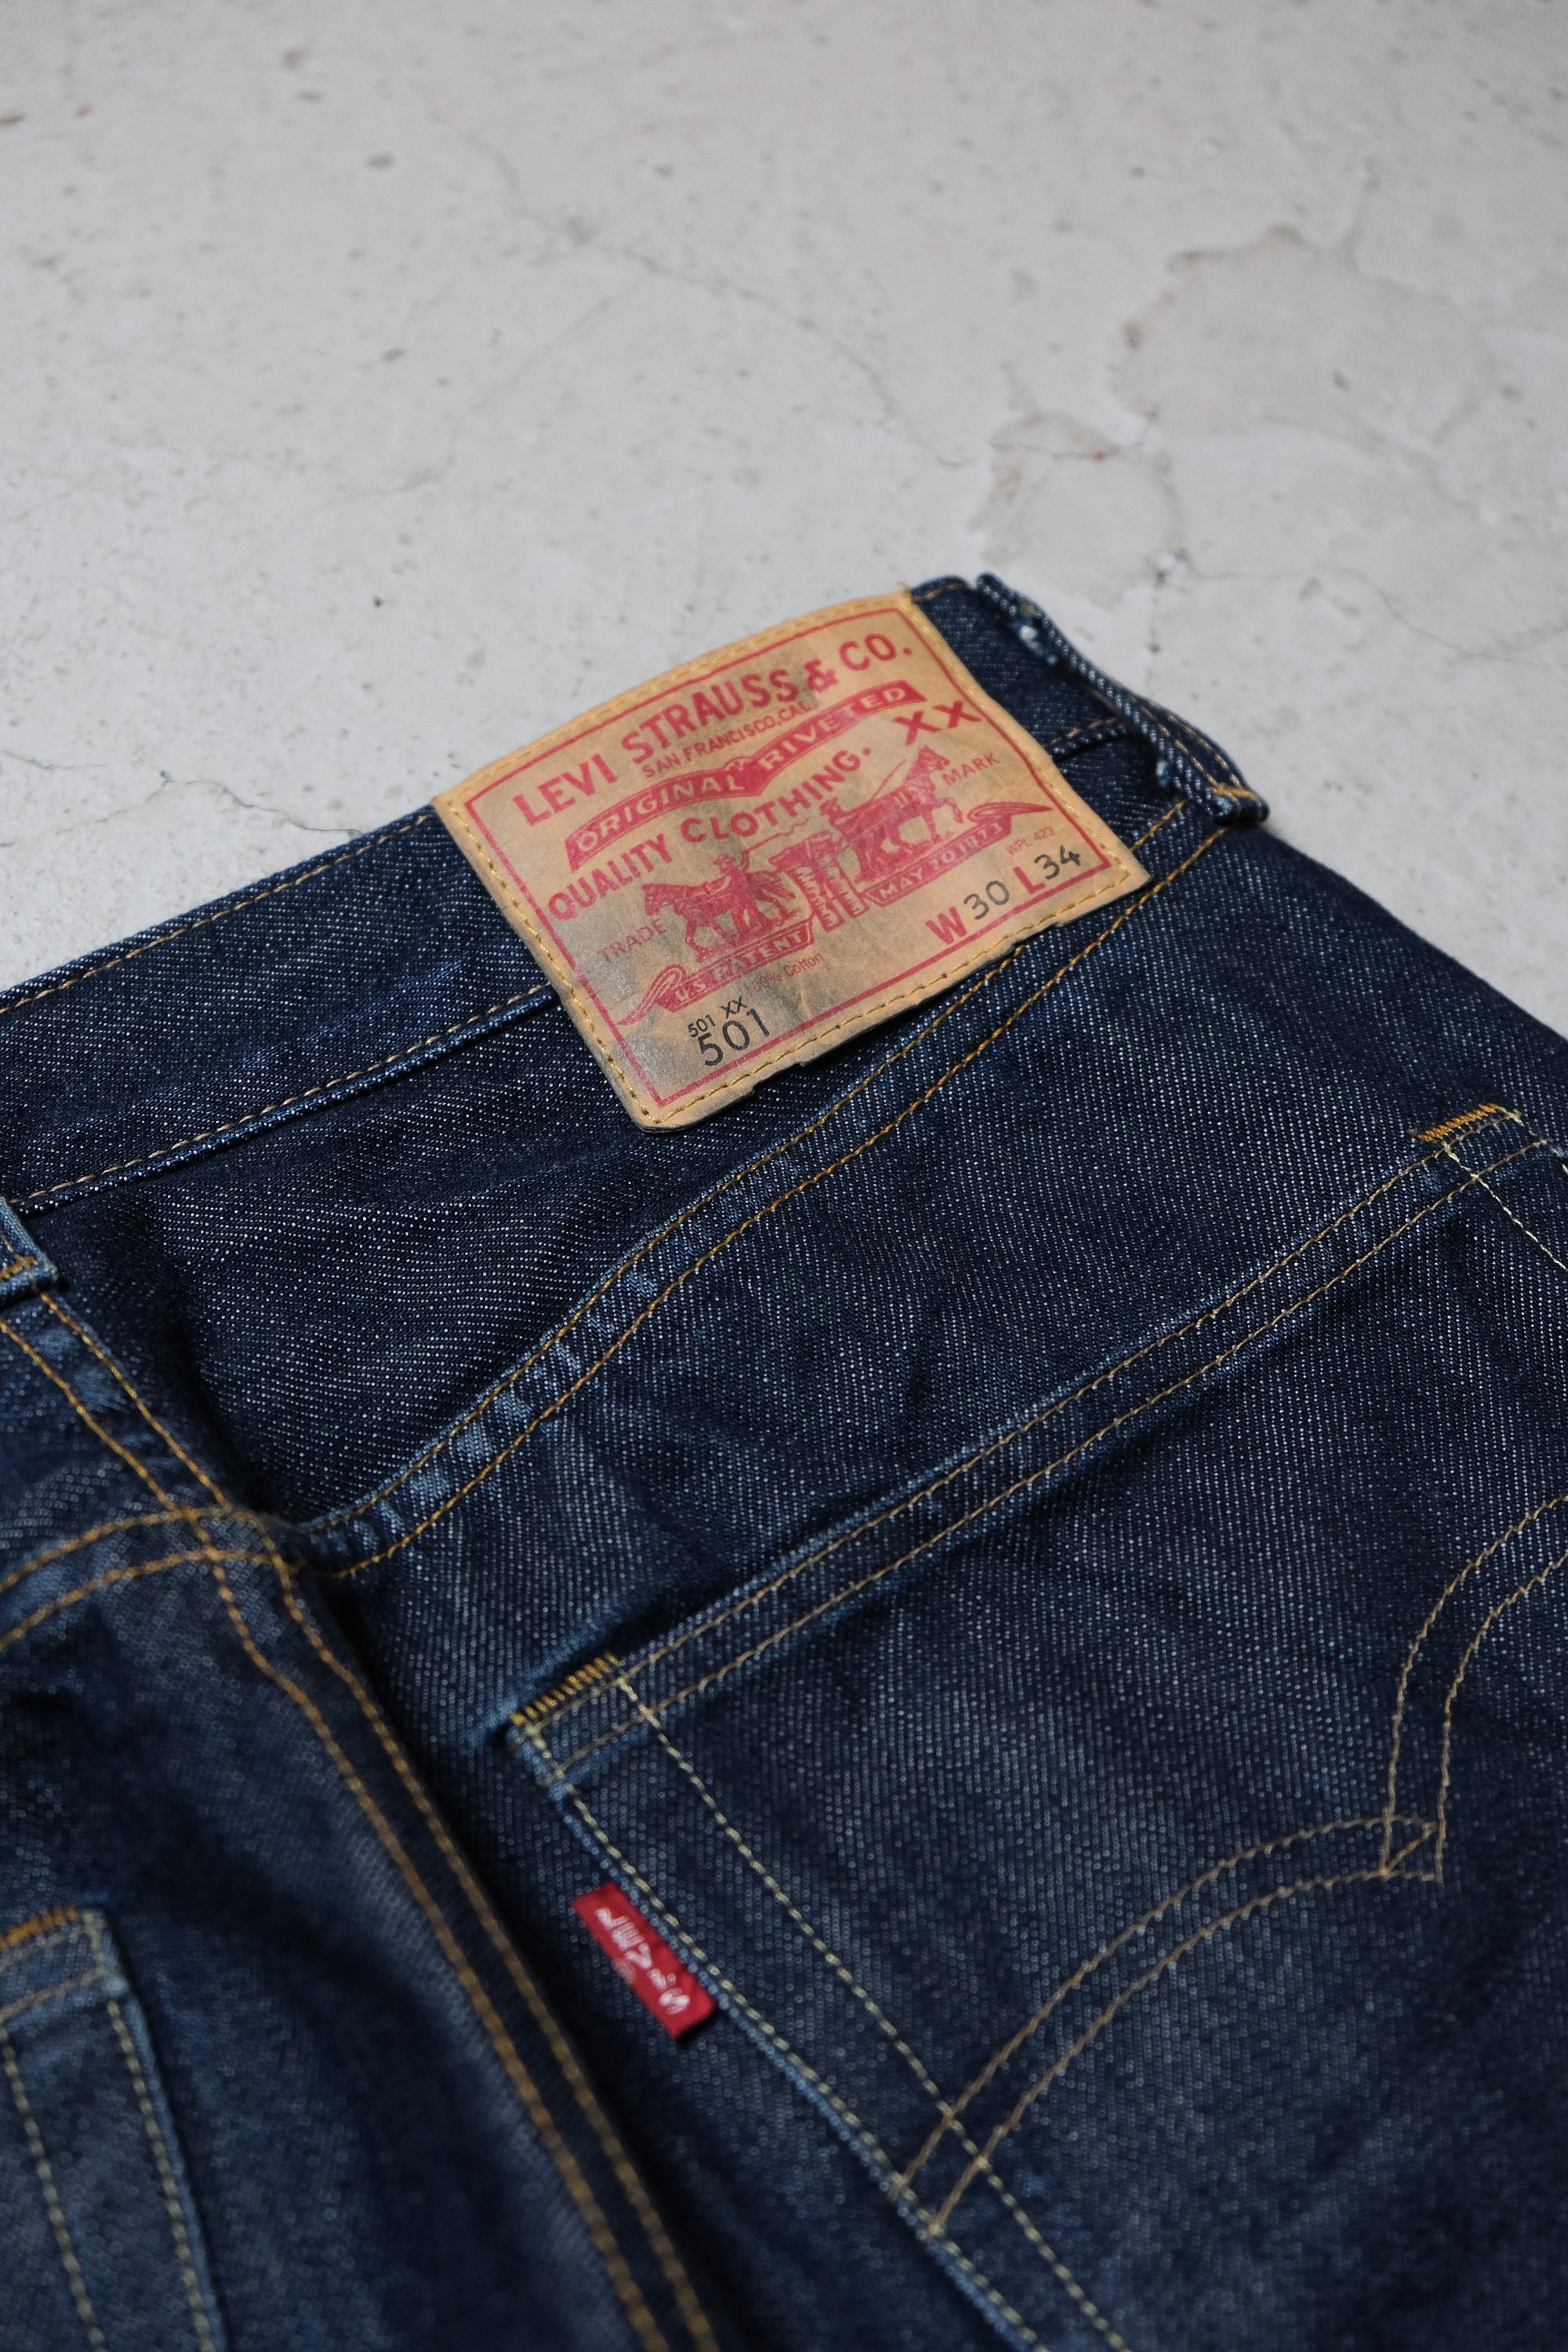 Levis Vintage Clothing LVC 66501 Selvedge Denim Jeans - Etsy